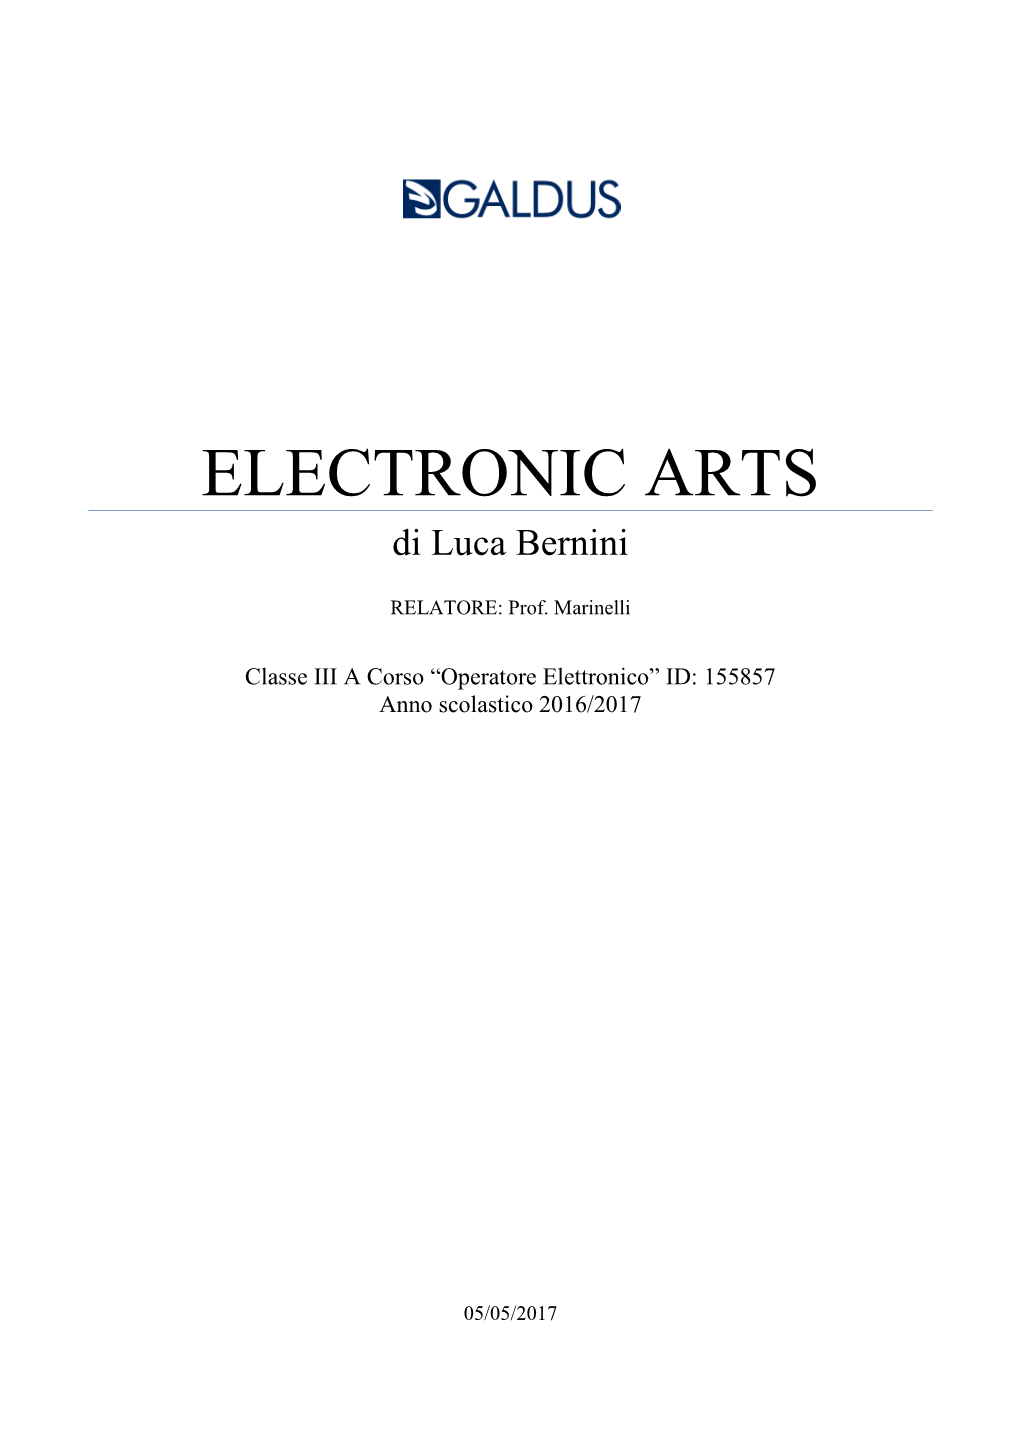 ELECTRONIC ARTS Di Luca Bernini